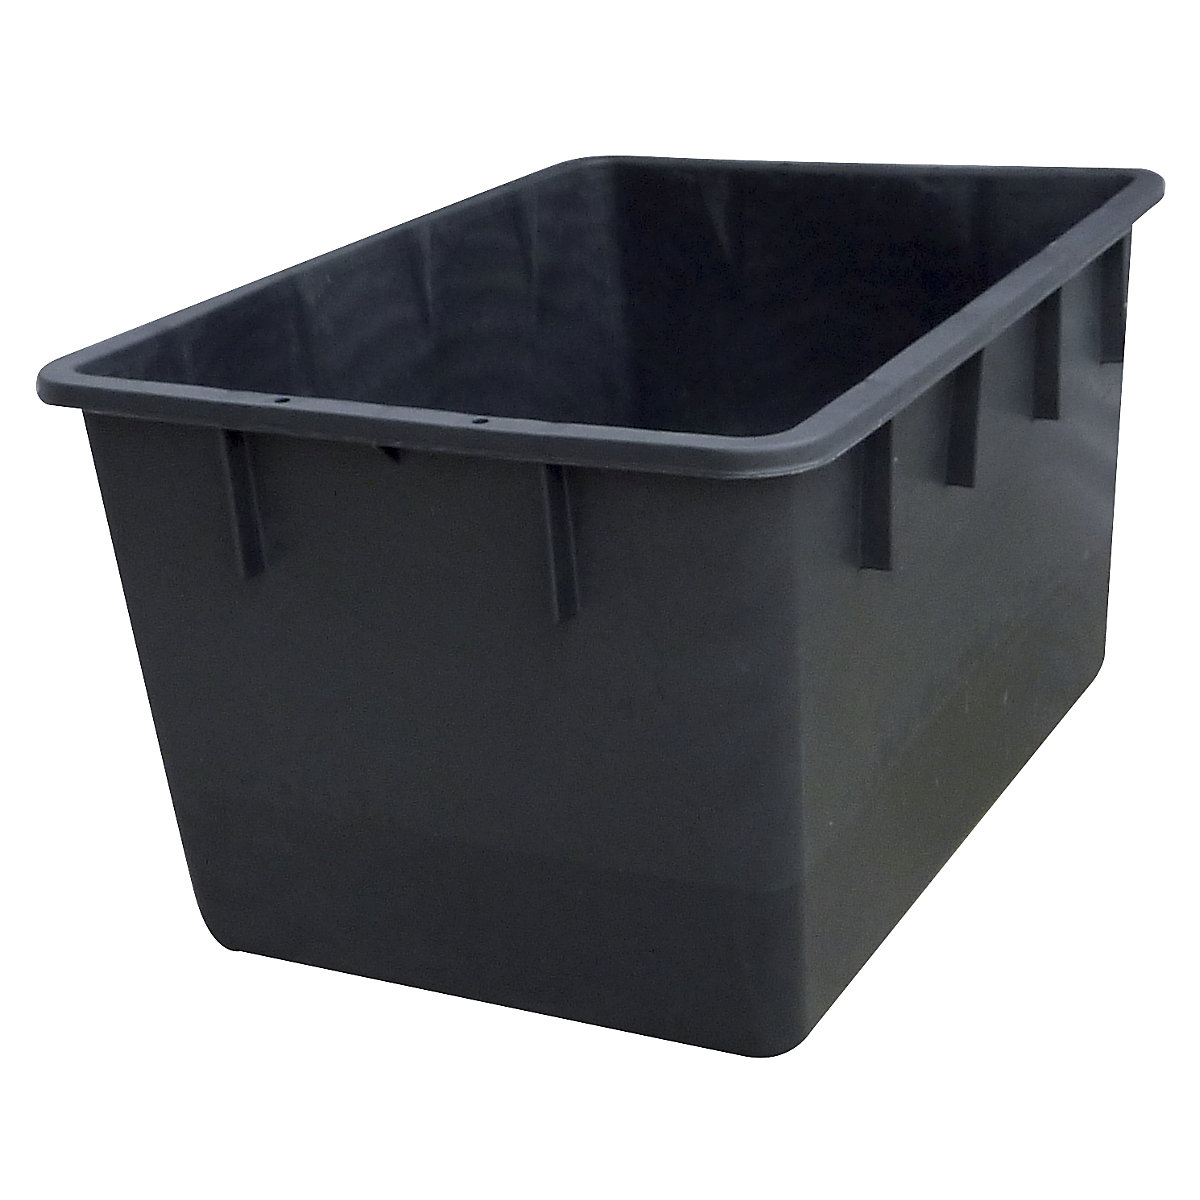 Stapelbehälter aus Polyethylen, konische Bauform, Volumen 220 l, schwarz-4